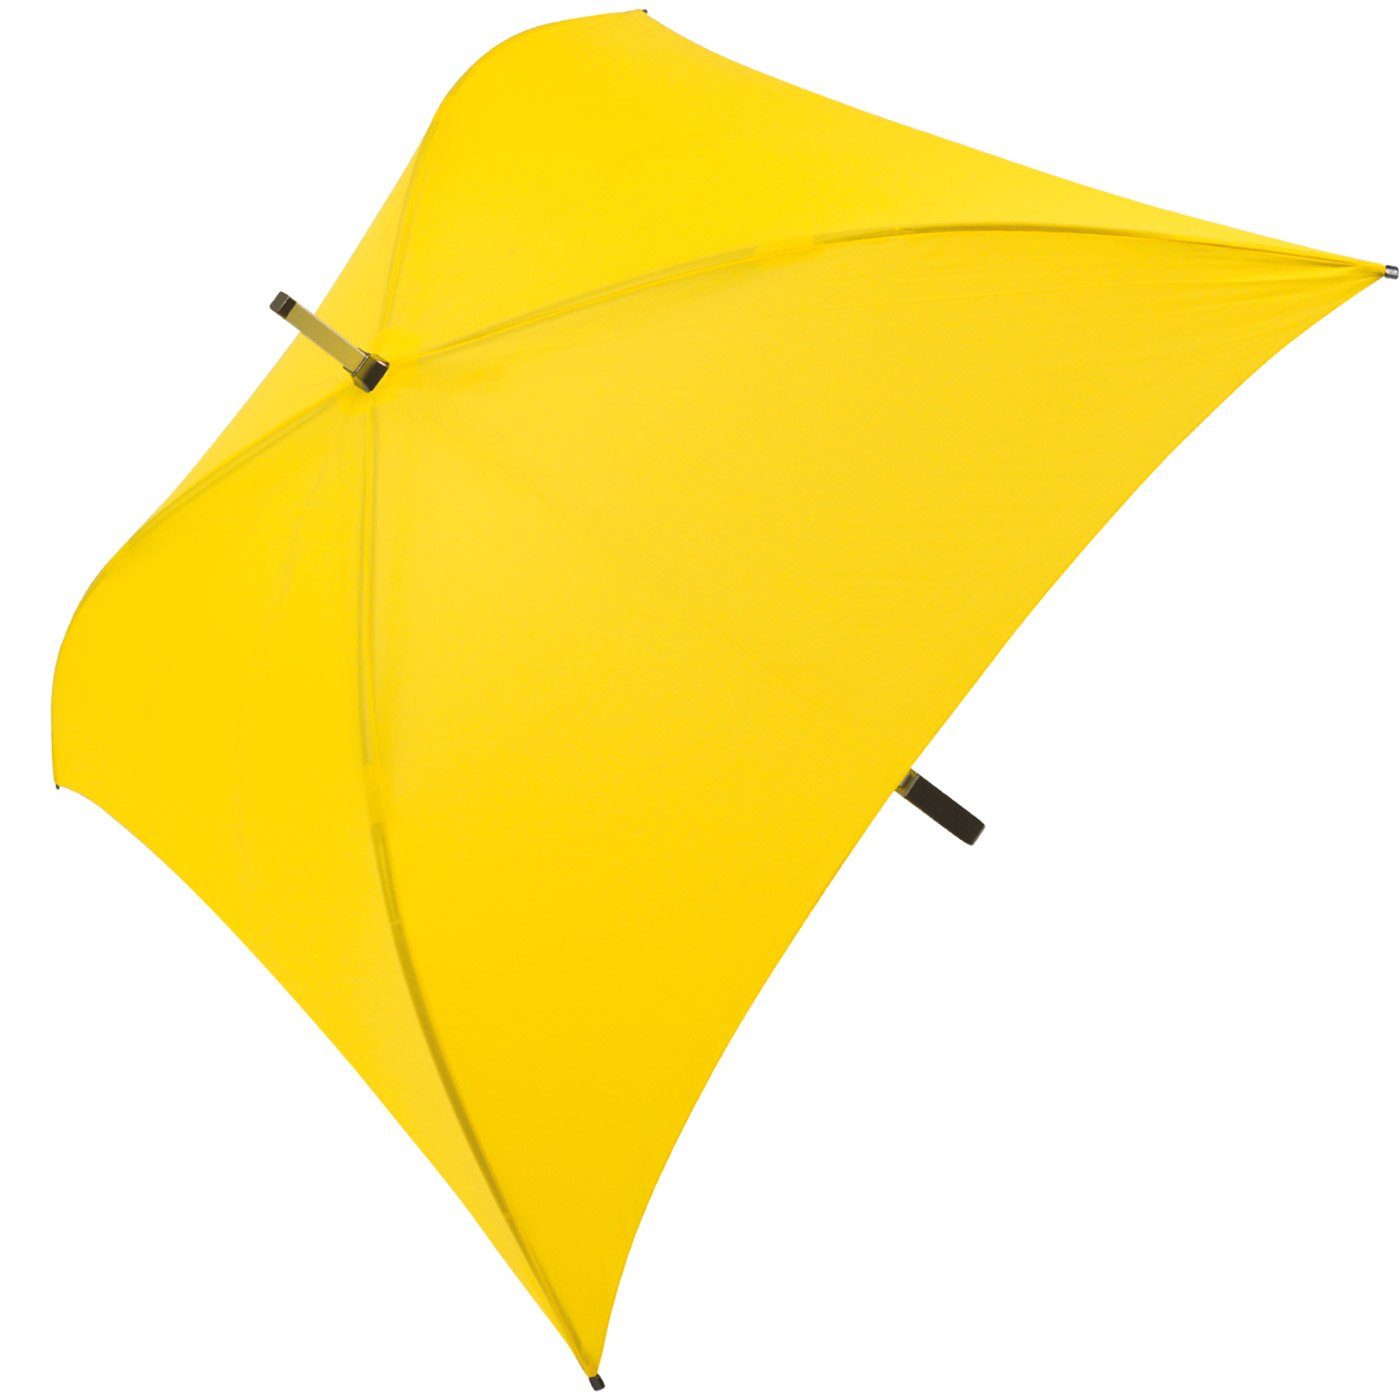 Regenschirm der besondere Langregenschirm gelb voll Regenschirm, Impliva Square® All ganz quadratischer